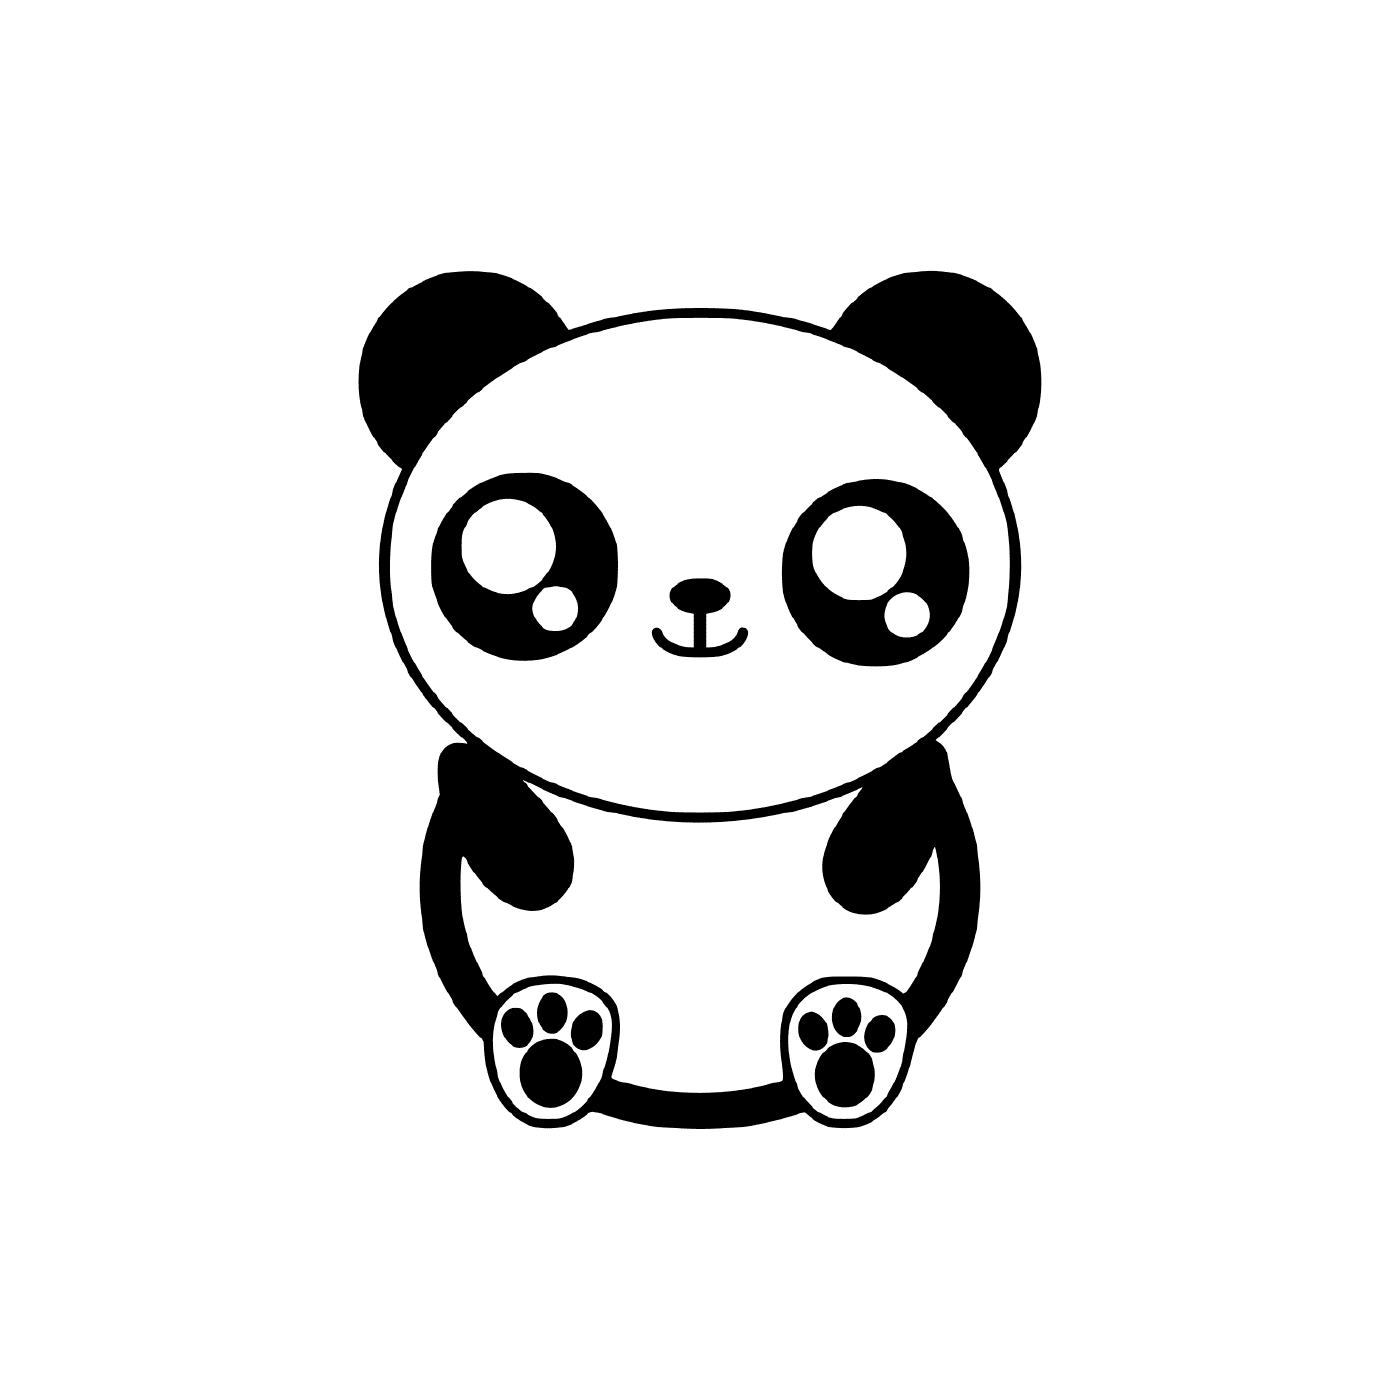  一只可爱的熊猫 